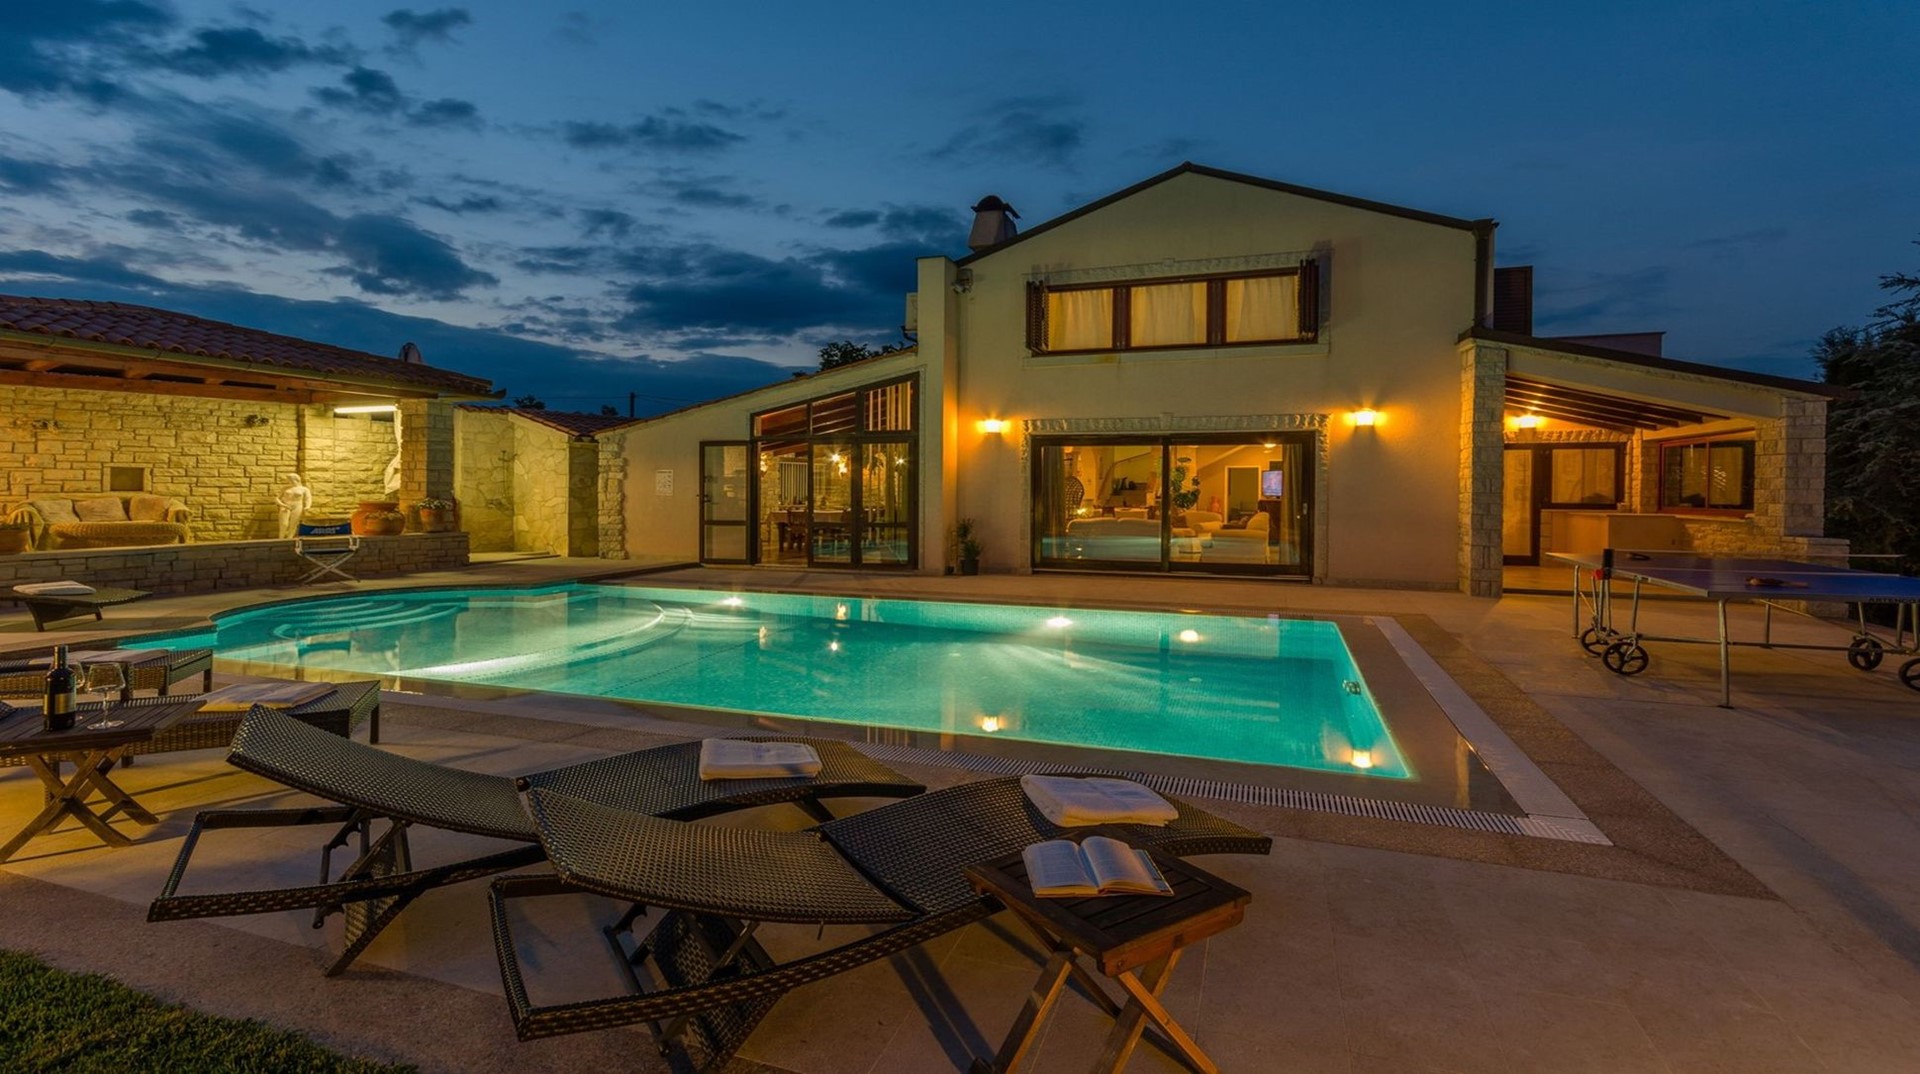 Noćni pogled na privatni grijani bazen u hrvatskoj luksuznoj vili Harmony u Istri dizajniranoj za odmor i najam obitelji i prijateljima